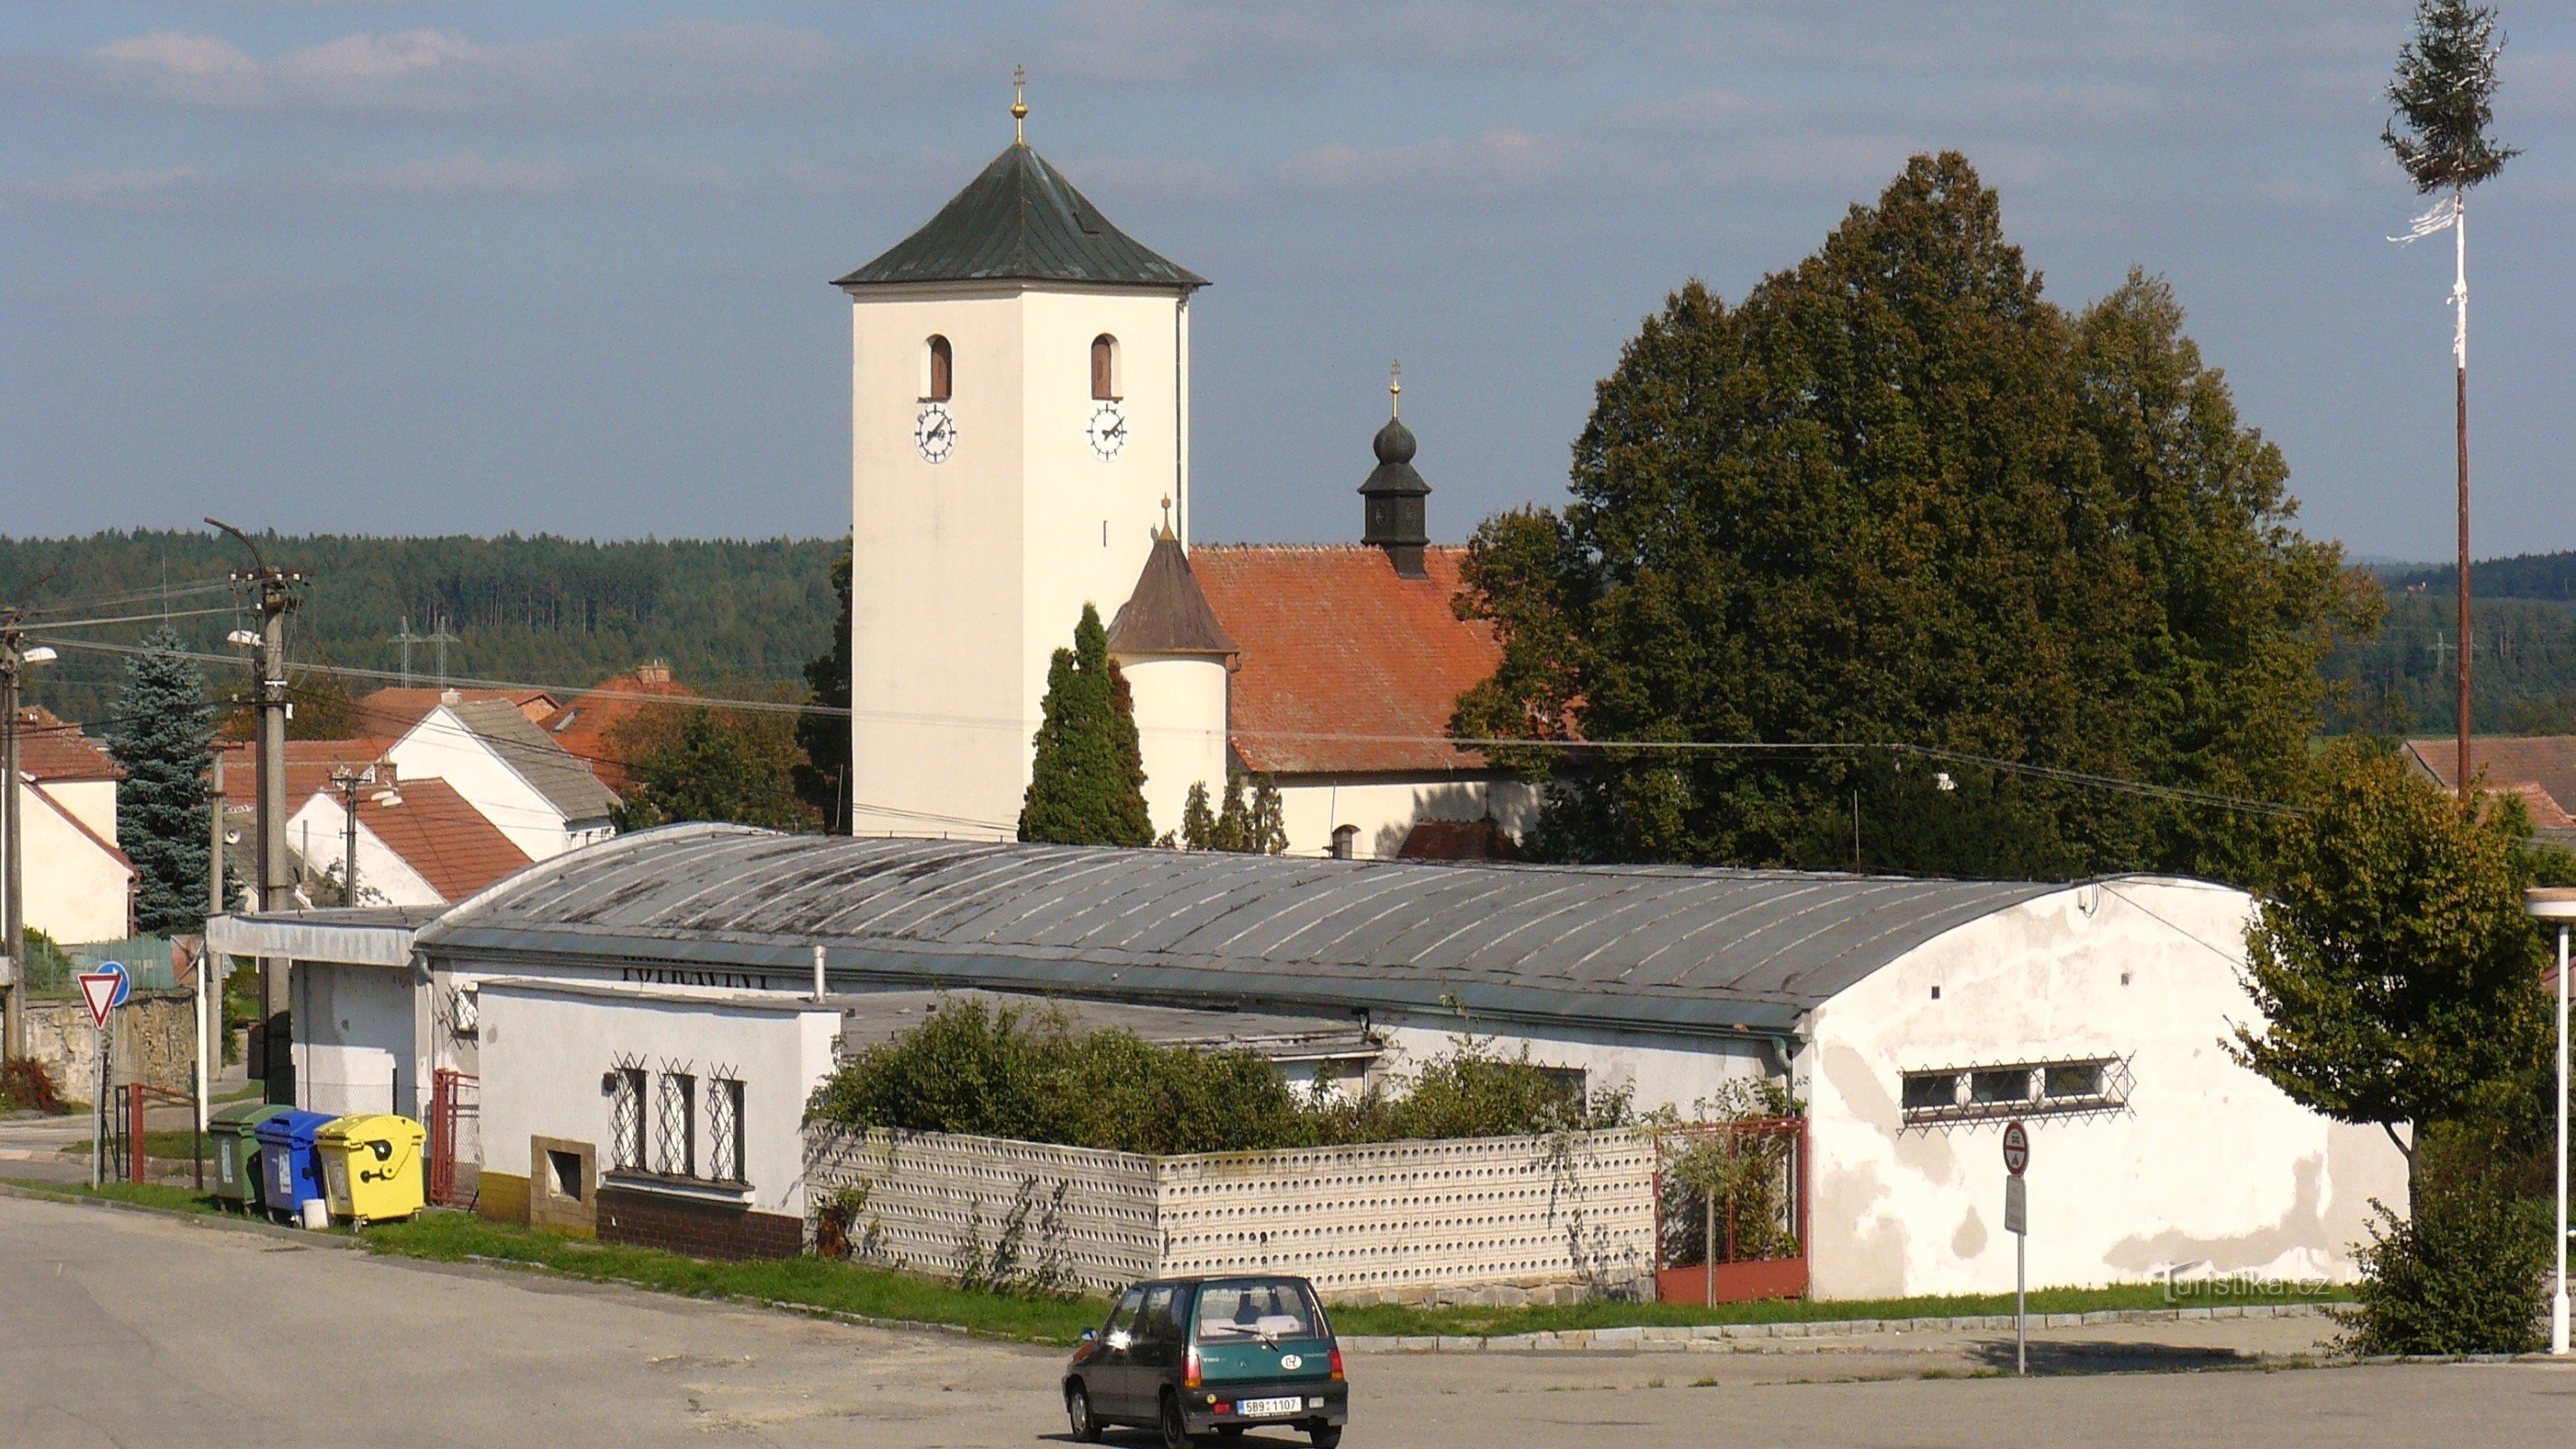 Zbraslav, una chiesa in stile romanico